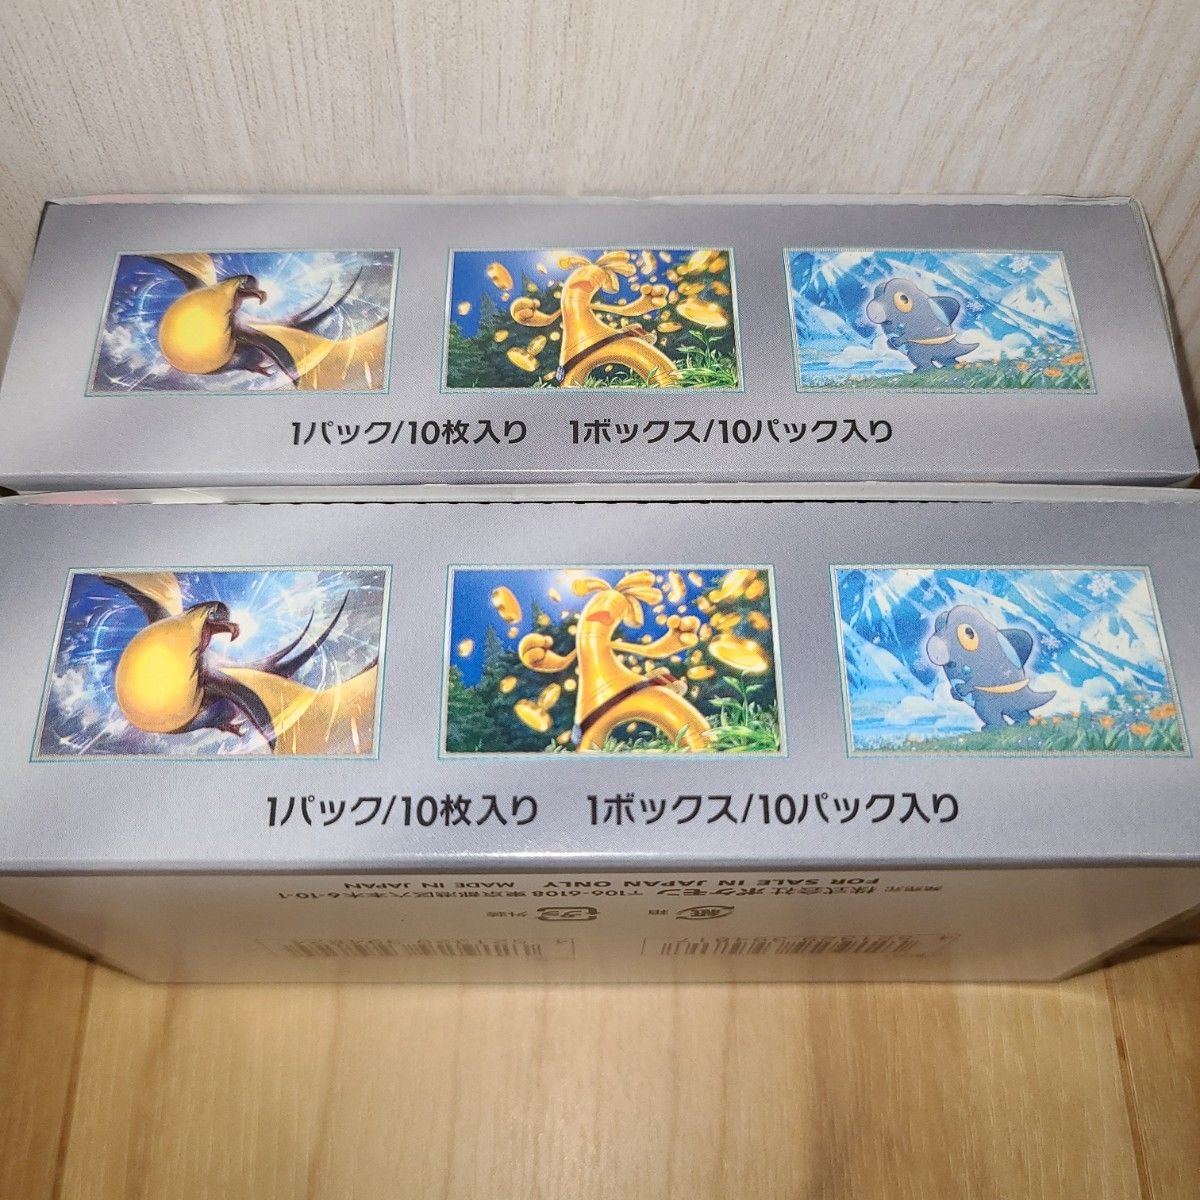   新品未開封【SR以上確定】ポケモンカード シャイニートレジャーex 2BOX 即日発送   ハイクラスパック 即購入大歓迎〇